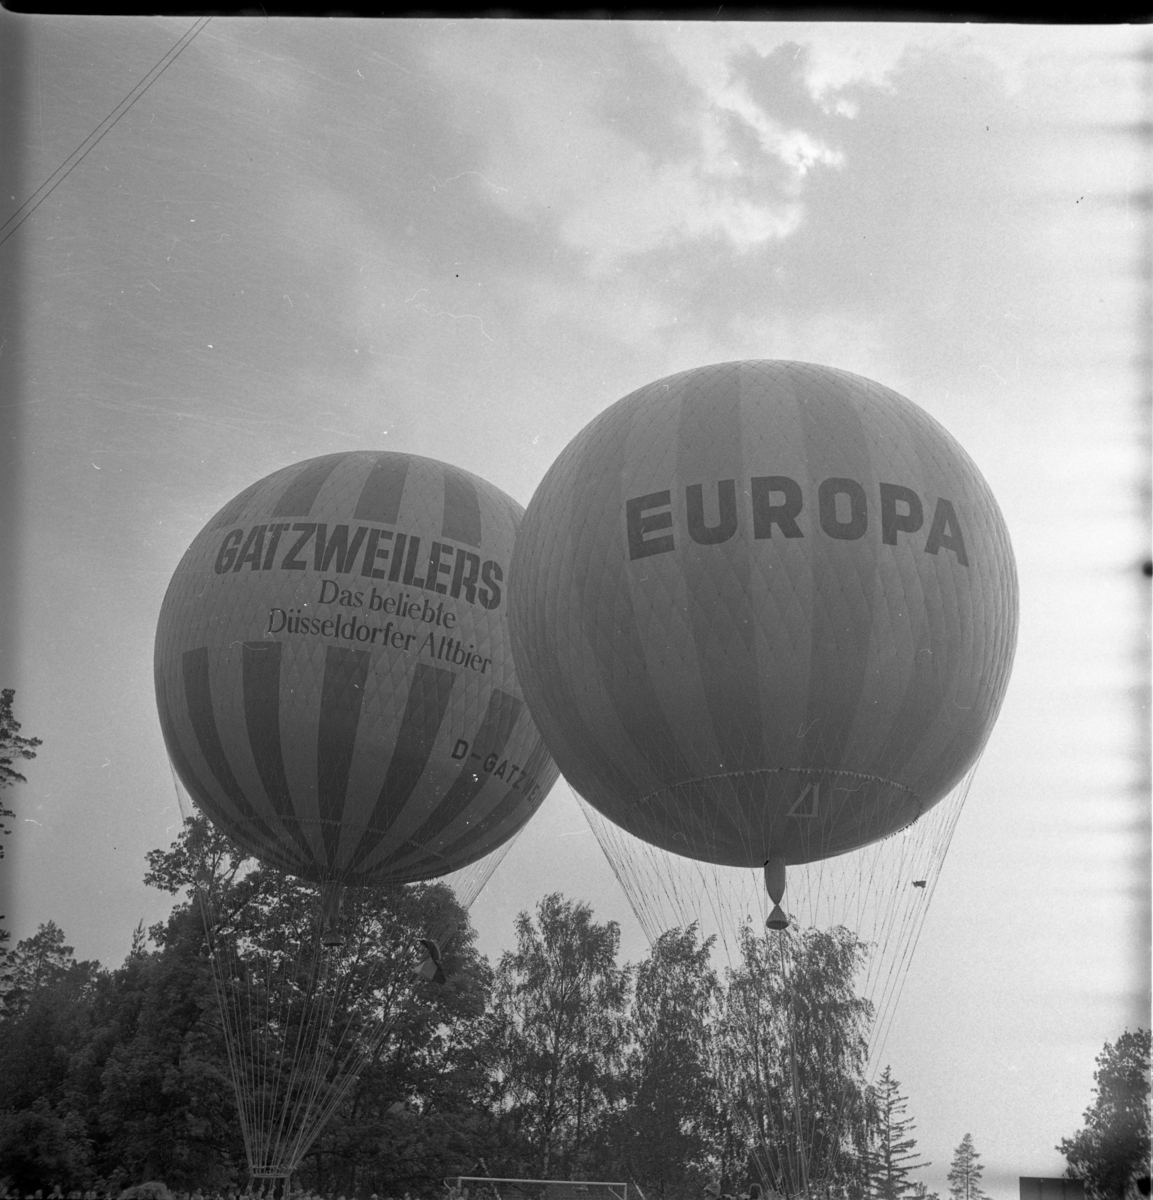 Två gasballonger på väg att lyfta, märkta "Gatzweilers Alt" respektive "Europa".